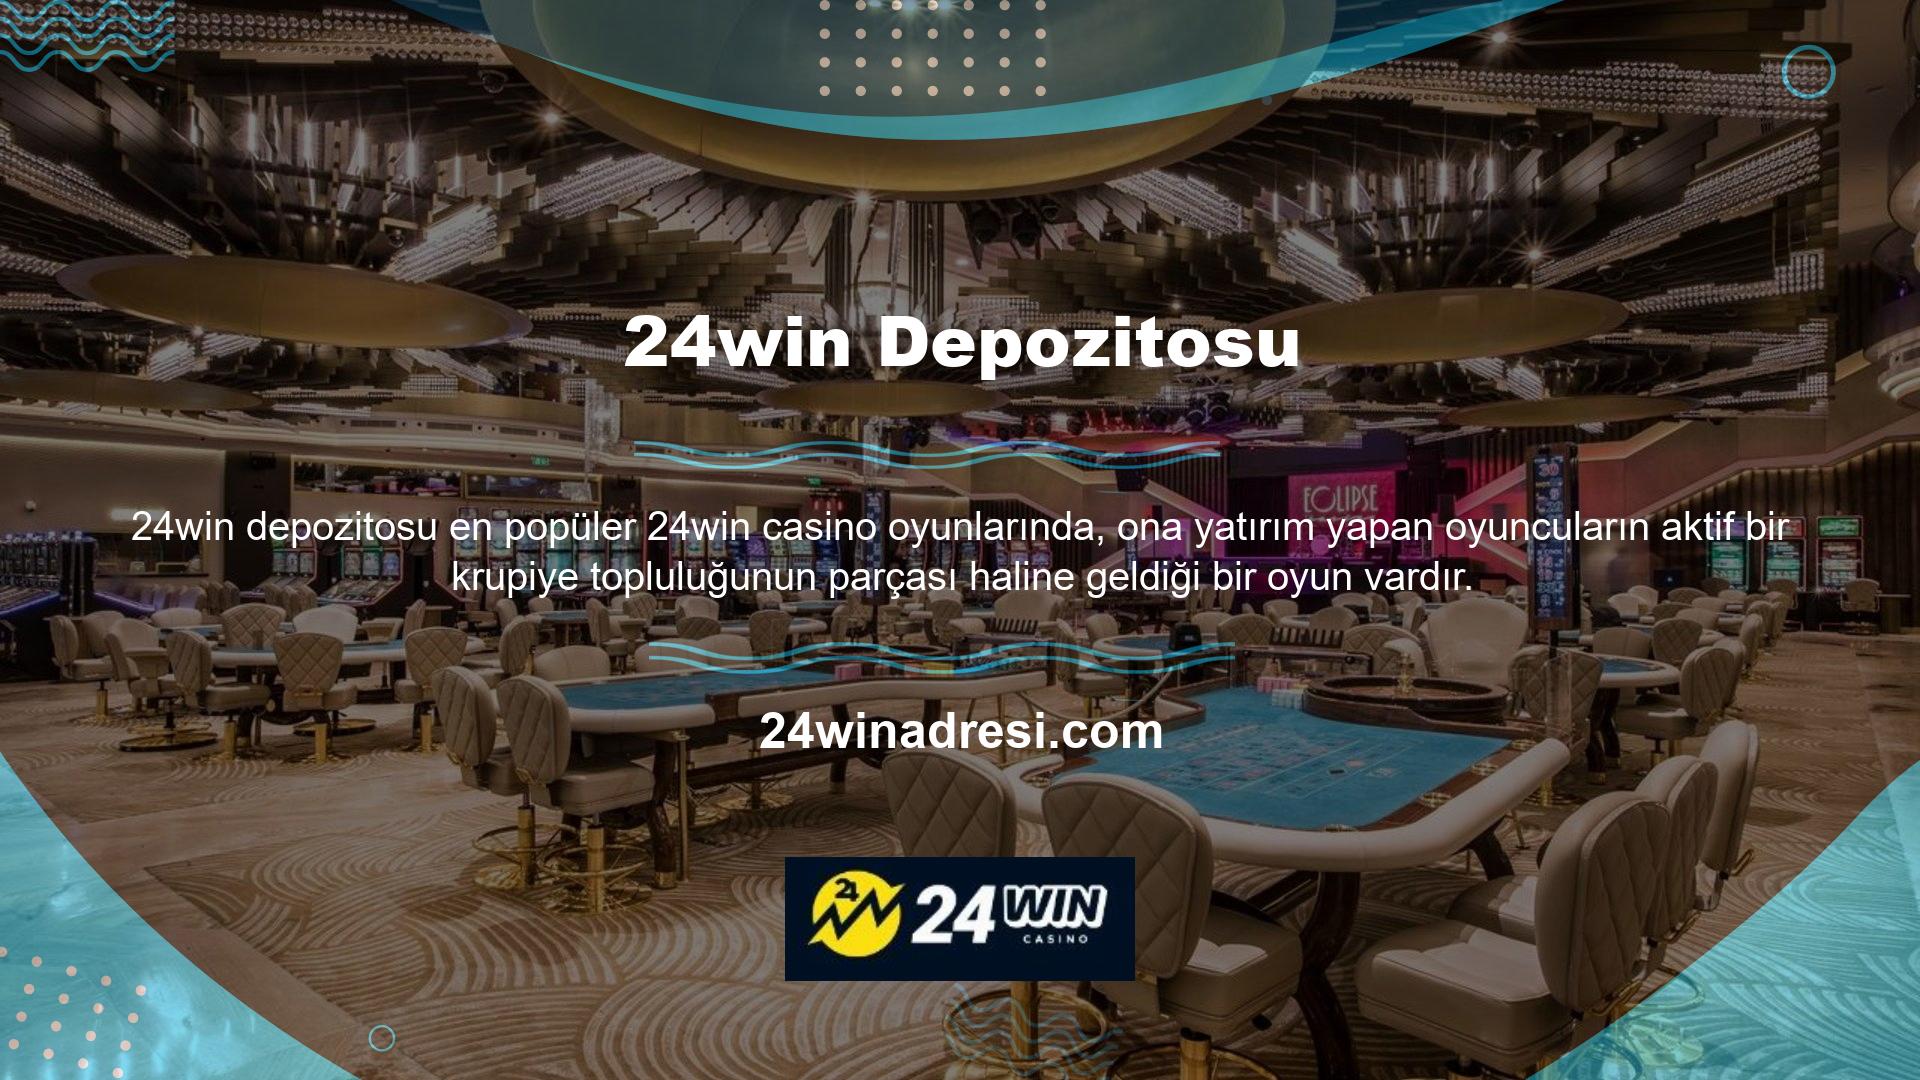 Kullanıcı, kullanıcı adı ve şifresini girerek, para yatırma bölümünde para yatırarak ve oyun masasına dilediği gibi oturarak casino oyunlarına erişebilir